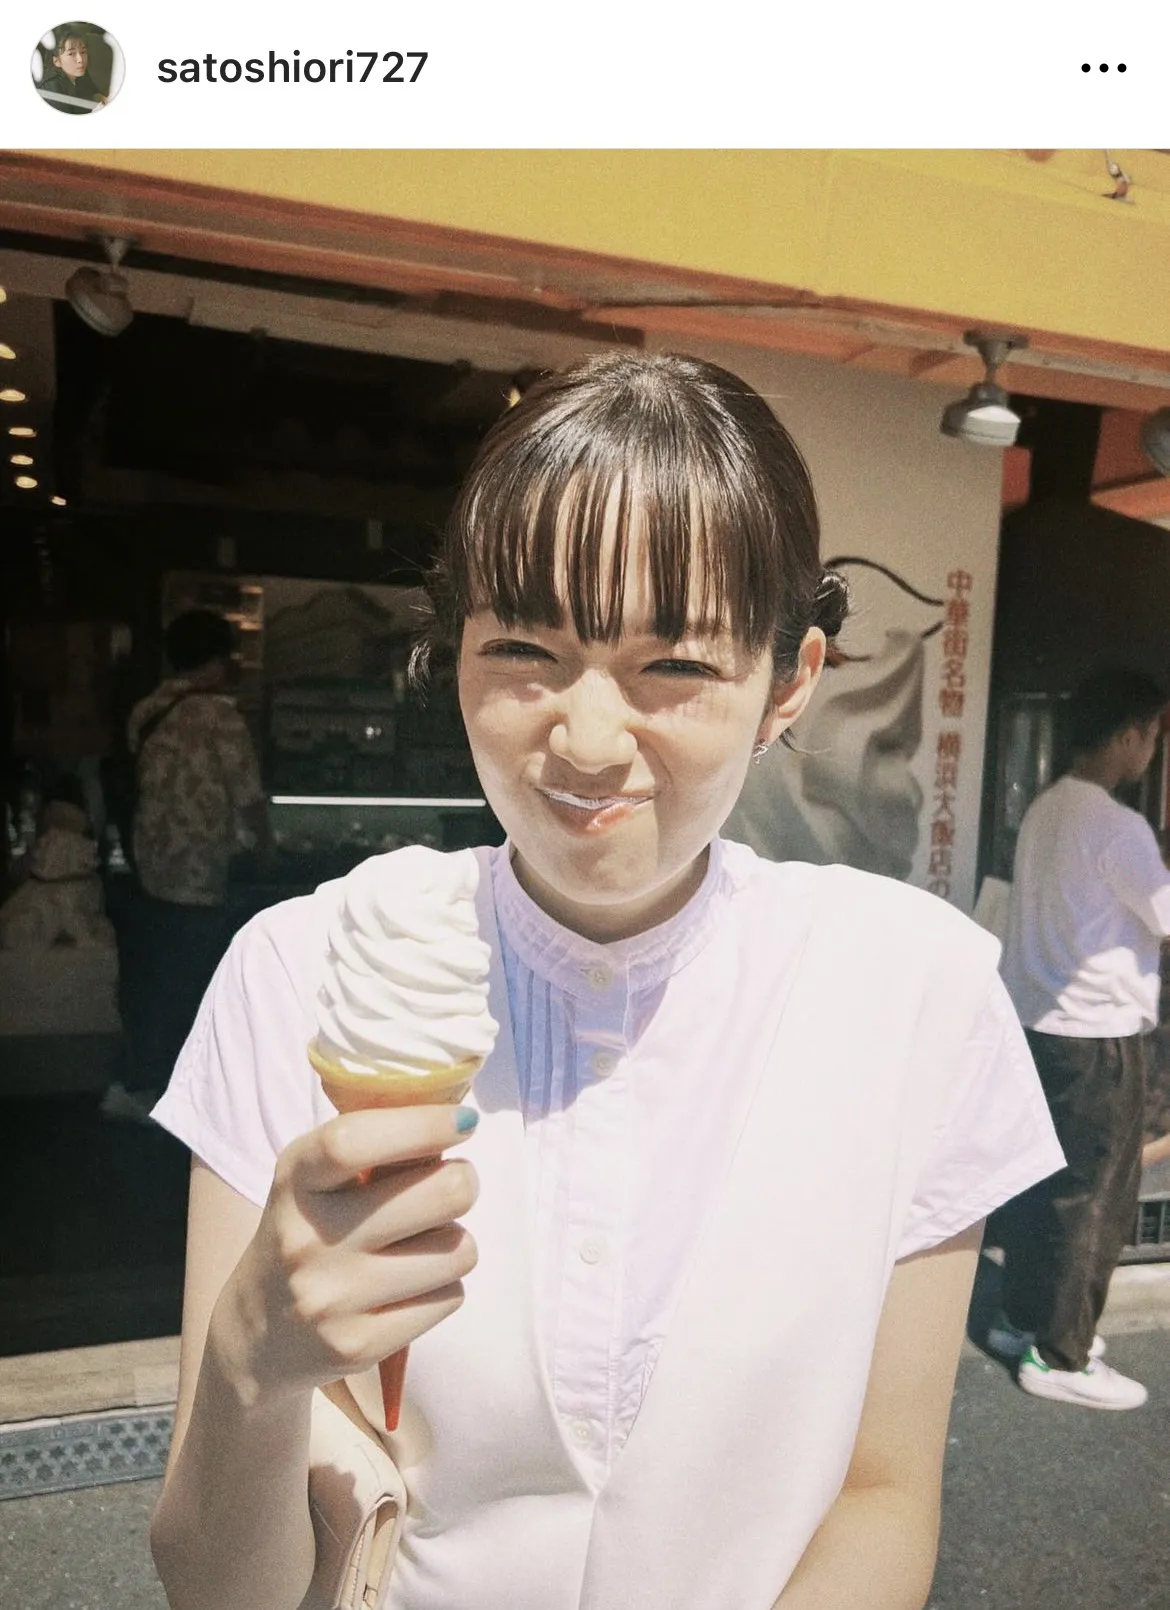 ソフトクリームをもって満面の笑みを見せる佐藤栞里